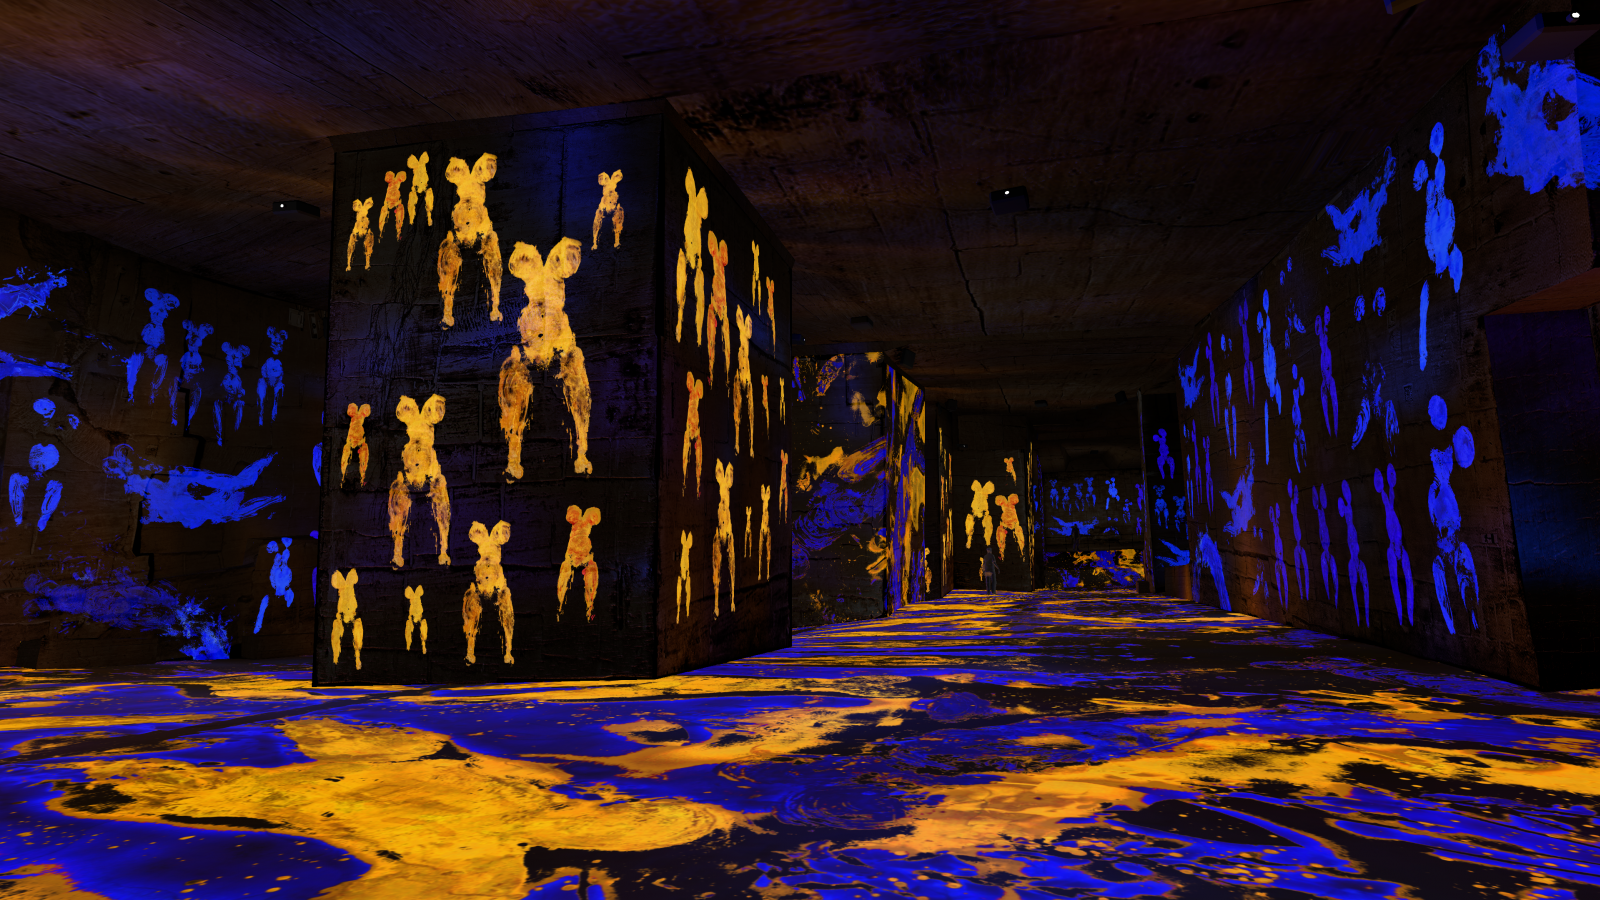 Vue de l'exposition immersive "L'infini bleu"